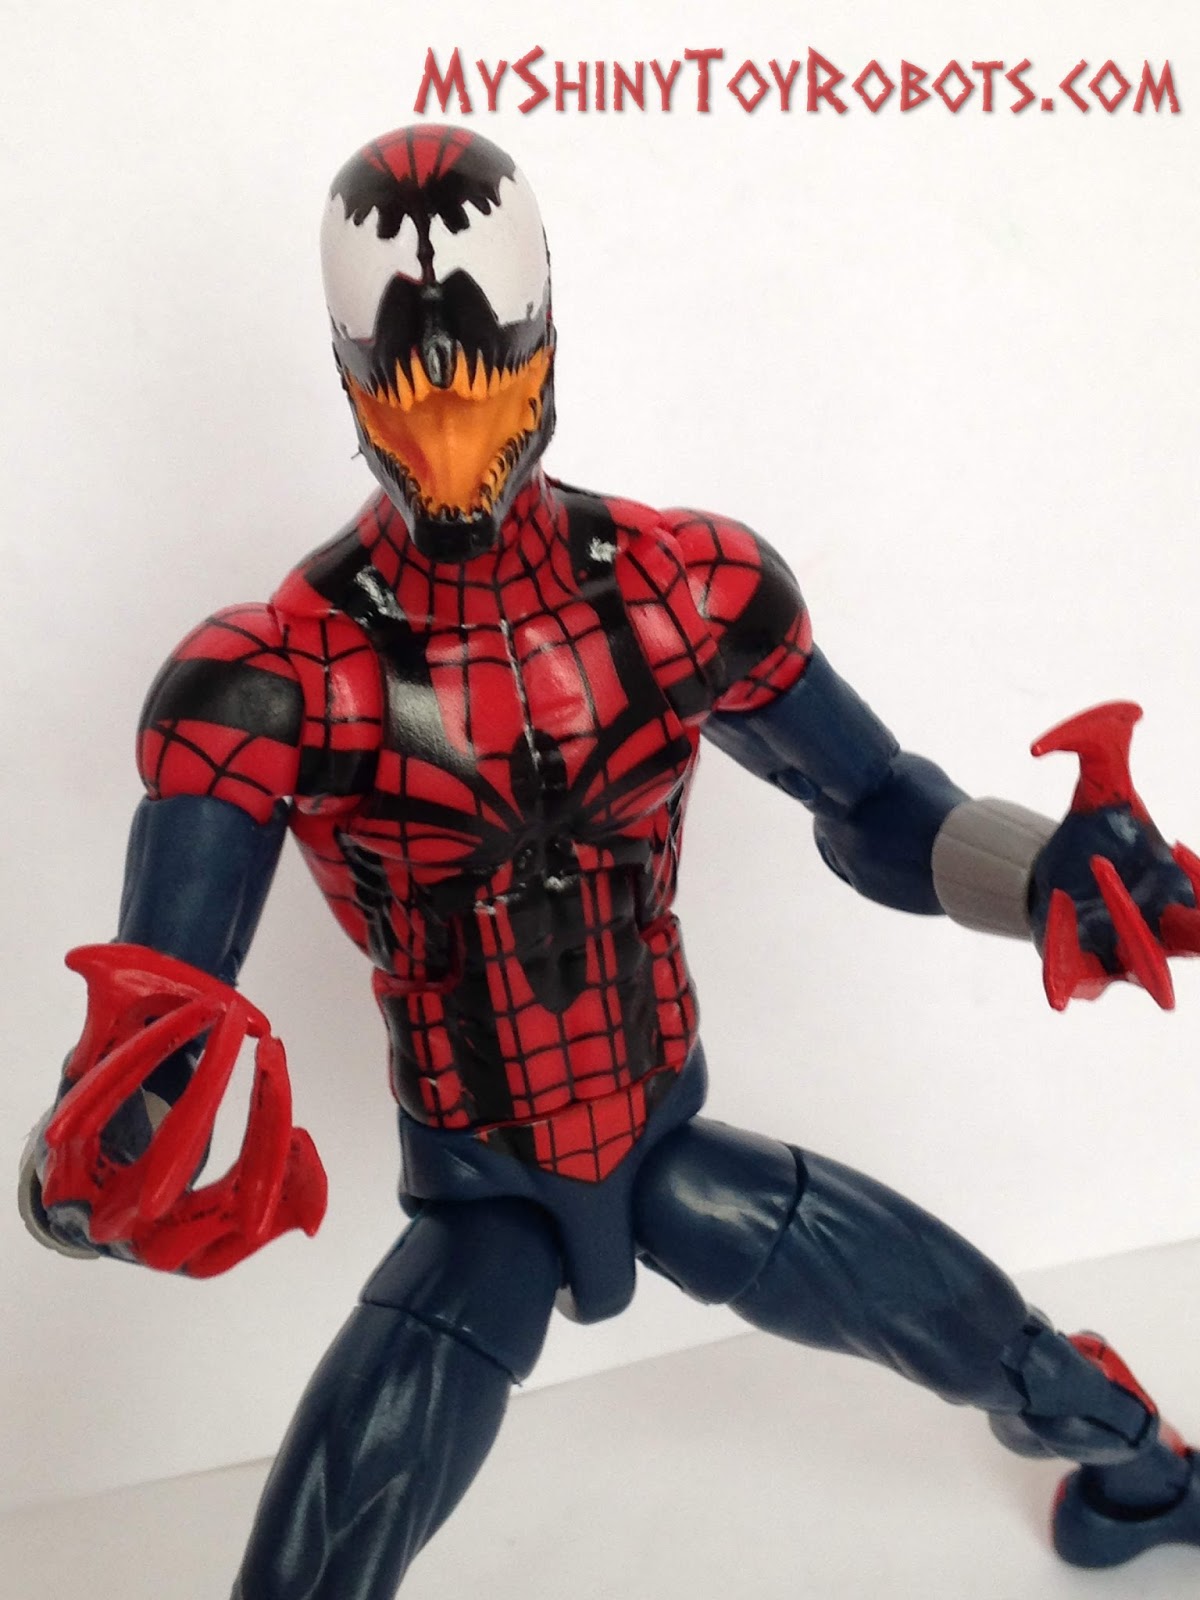 Toybox REVIEW: Marvel Legends Spider-Man (Ben Reilly)/Spider-Carnage.